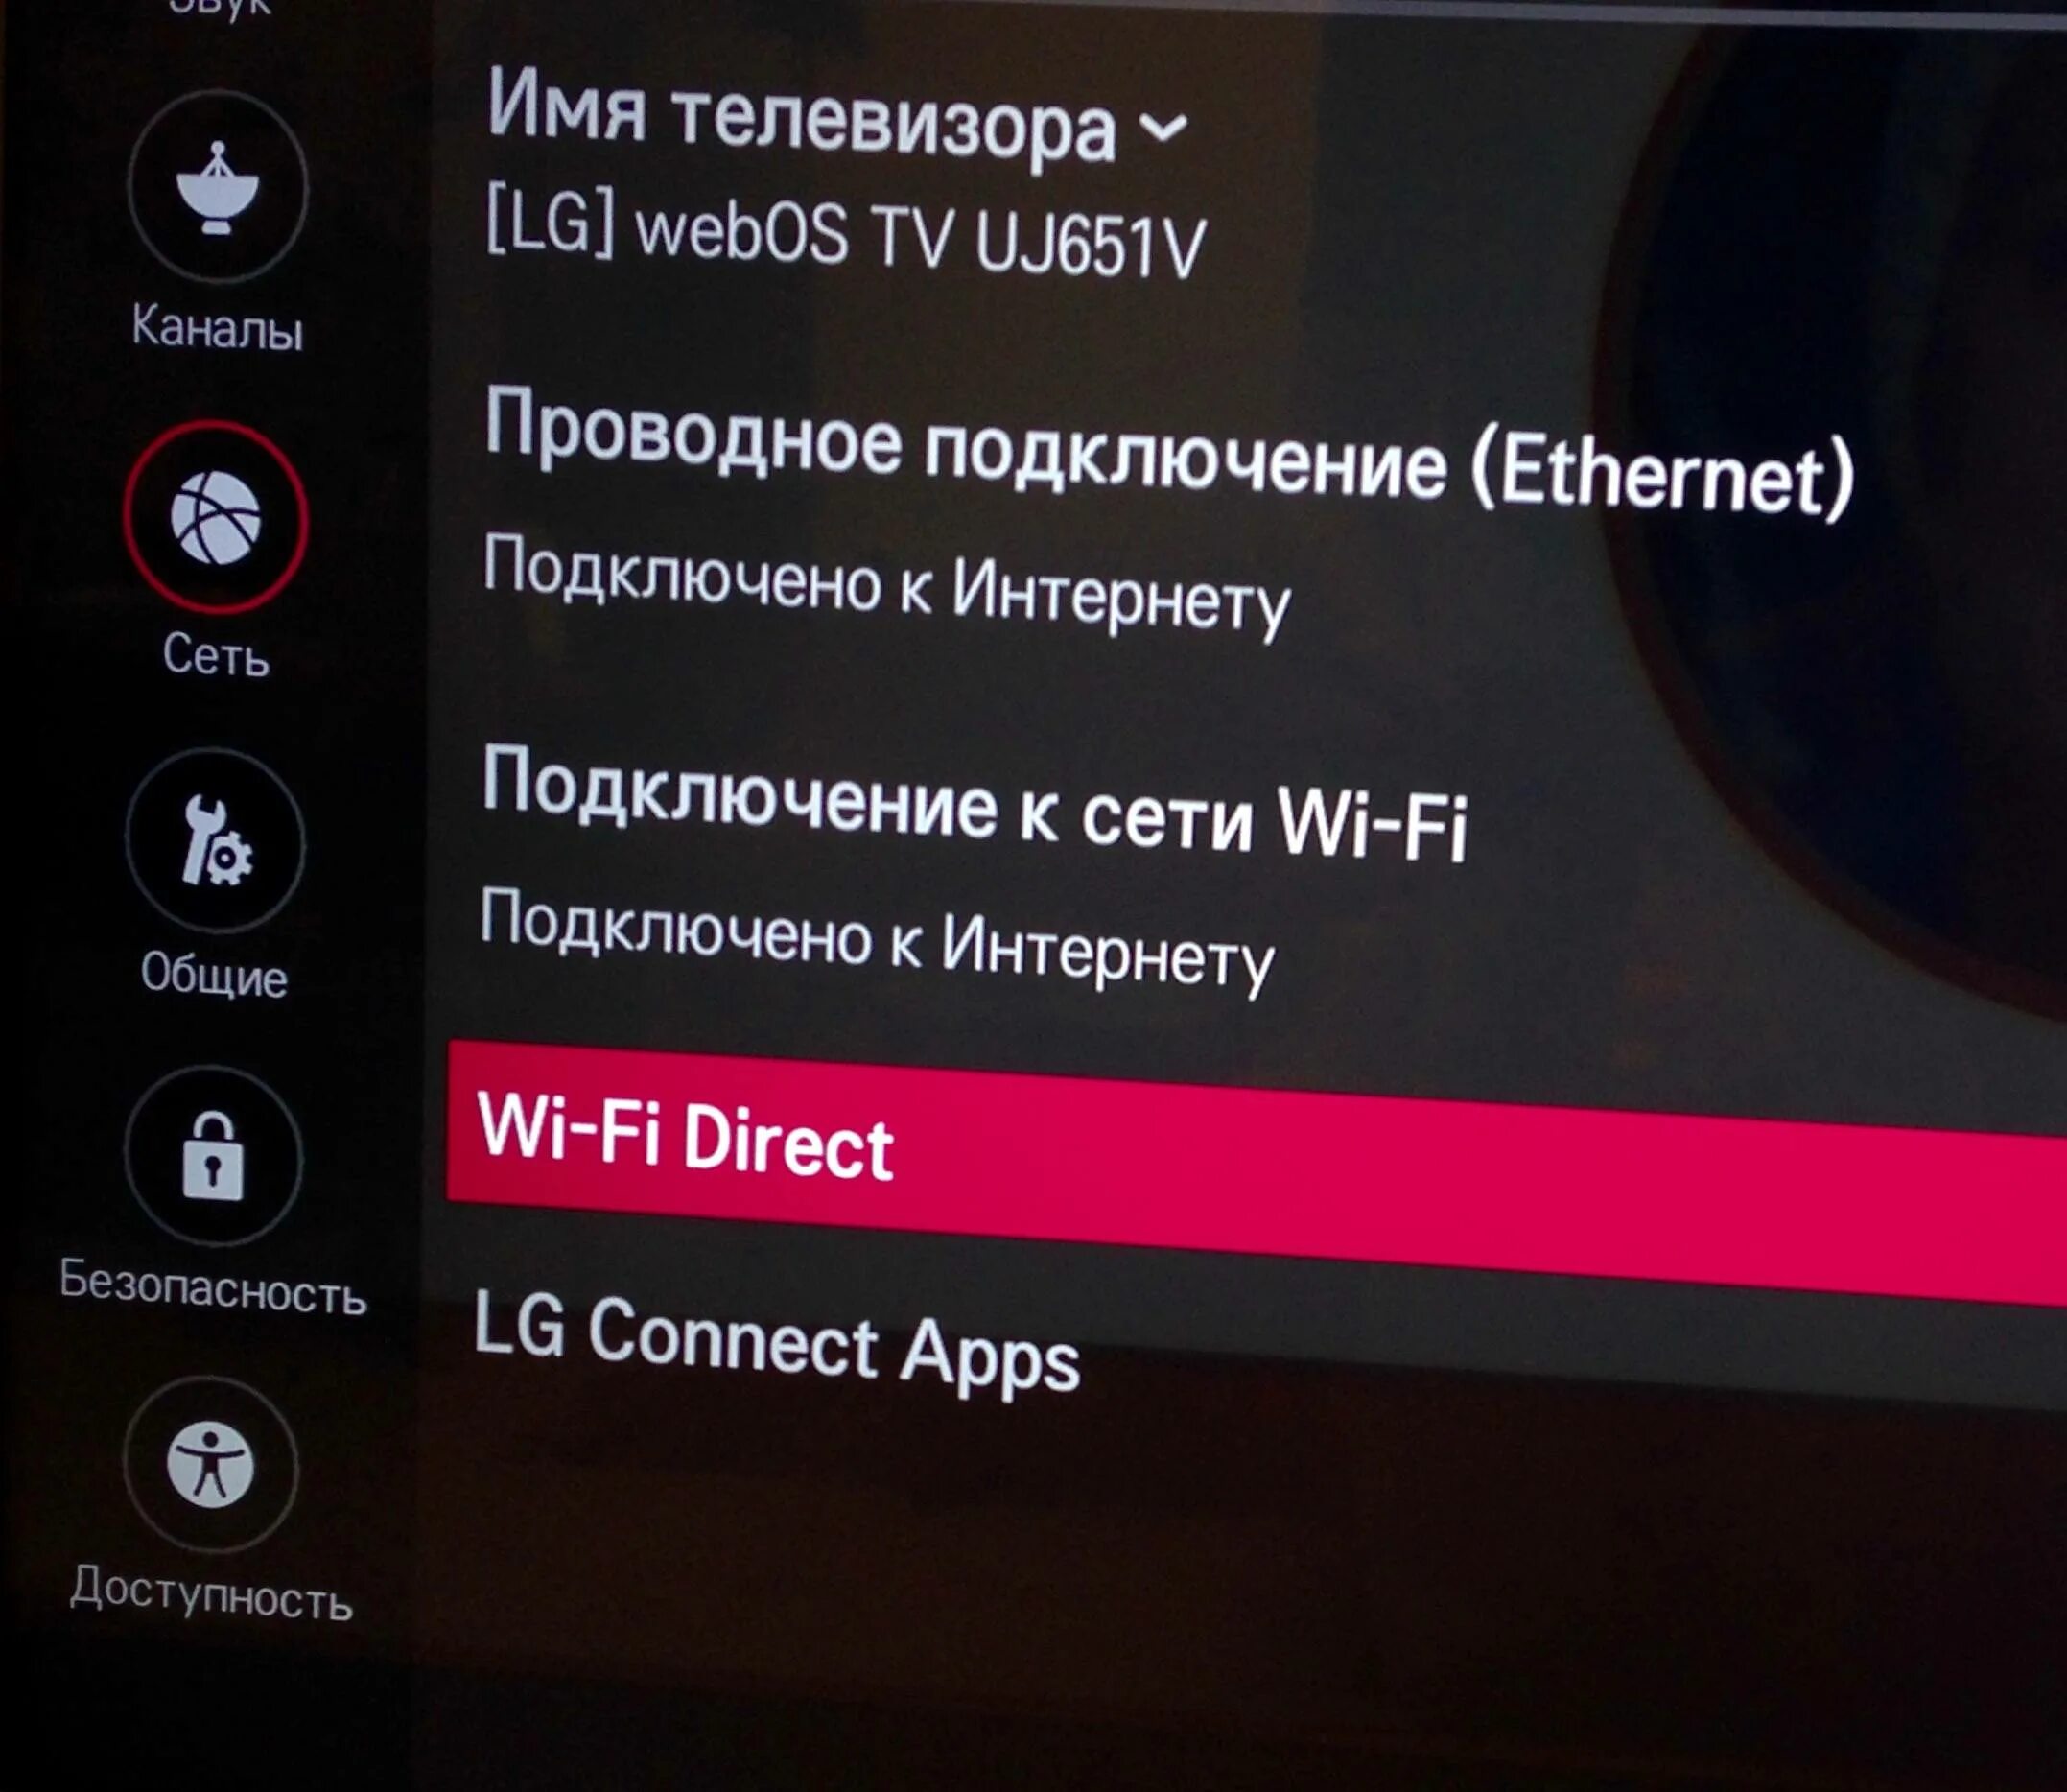 Как с телефона видео на телевизор lg. Телевизор LG подключить вай фай. Подключить интернет к телевизору LG через вай фай. Подключить смартфон к телевизору через Wi-Fi. Подключить телефон к телевизору через WIFI.